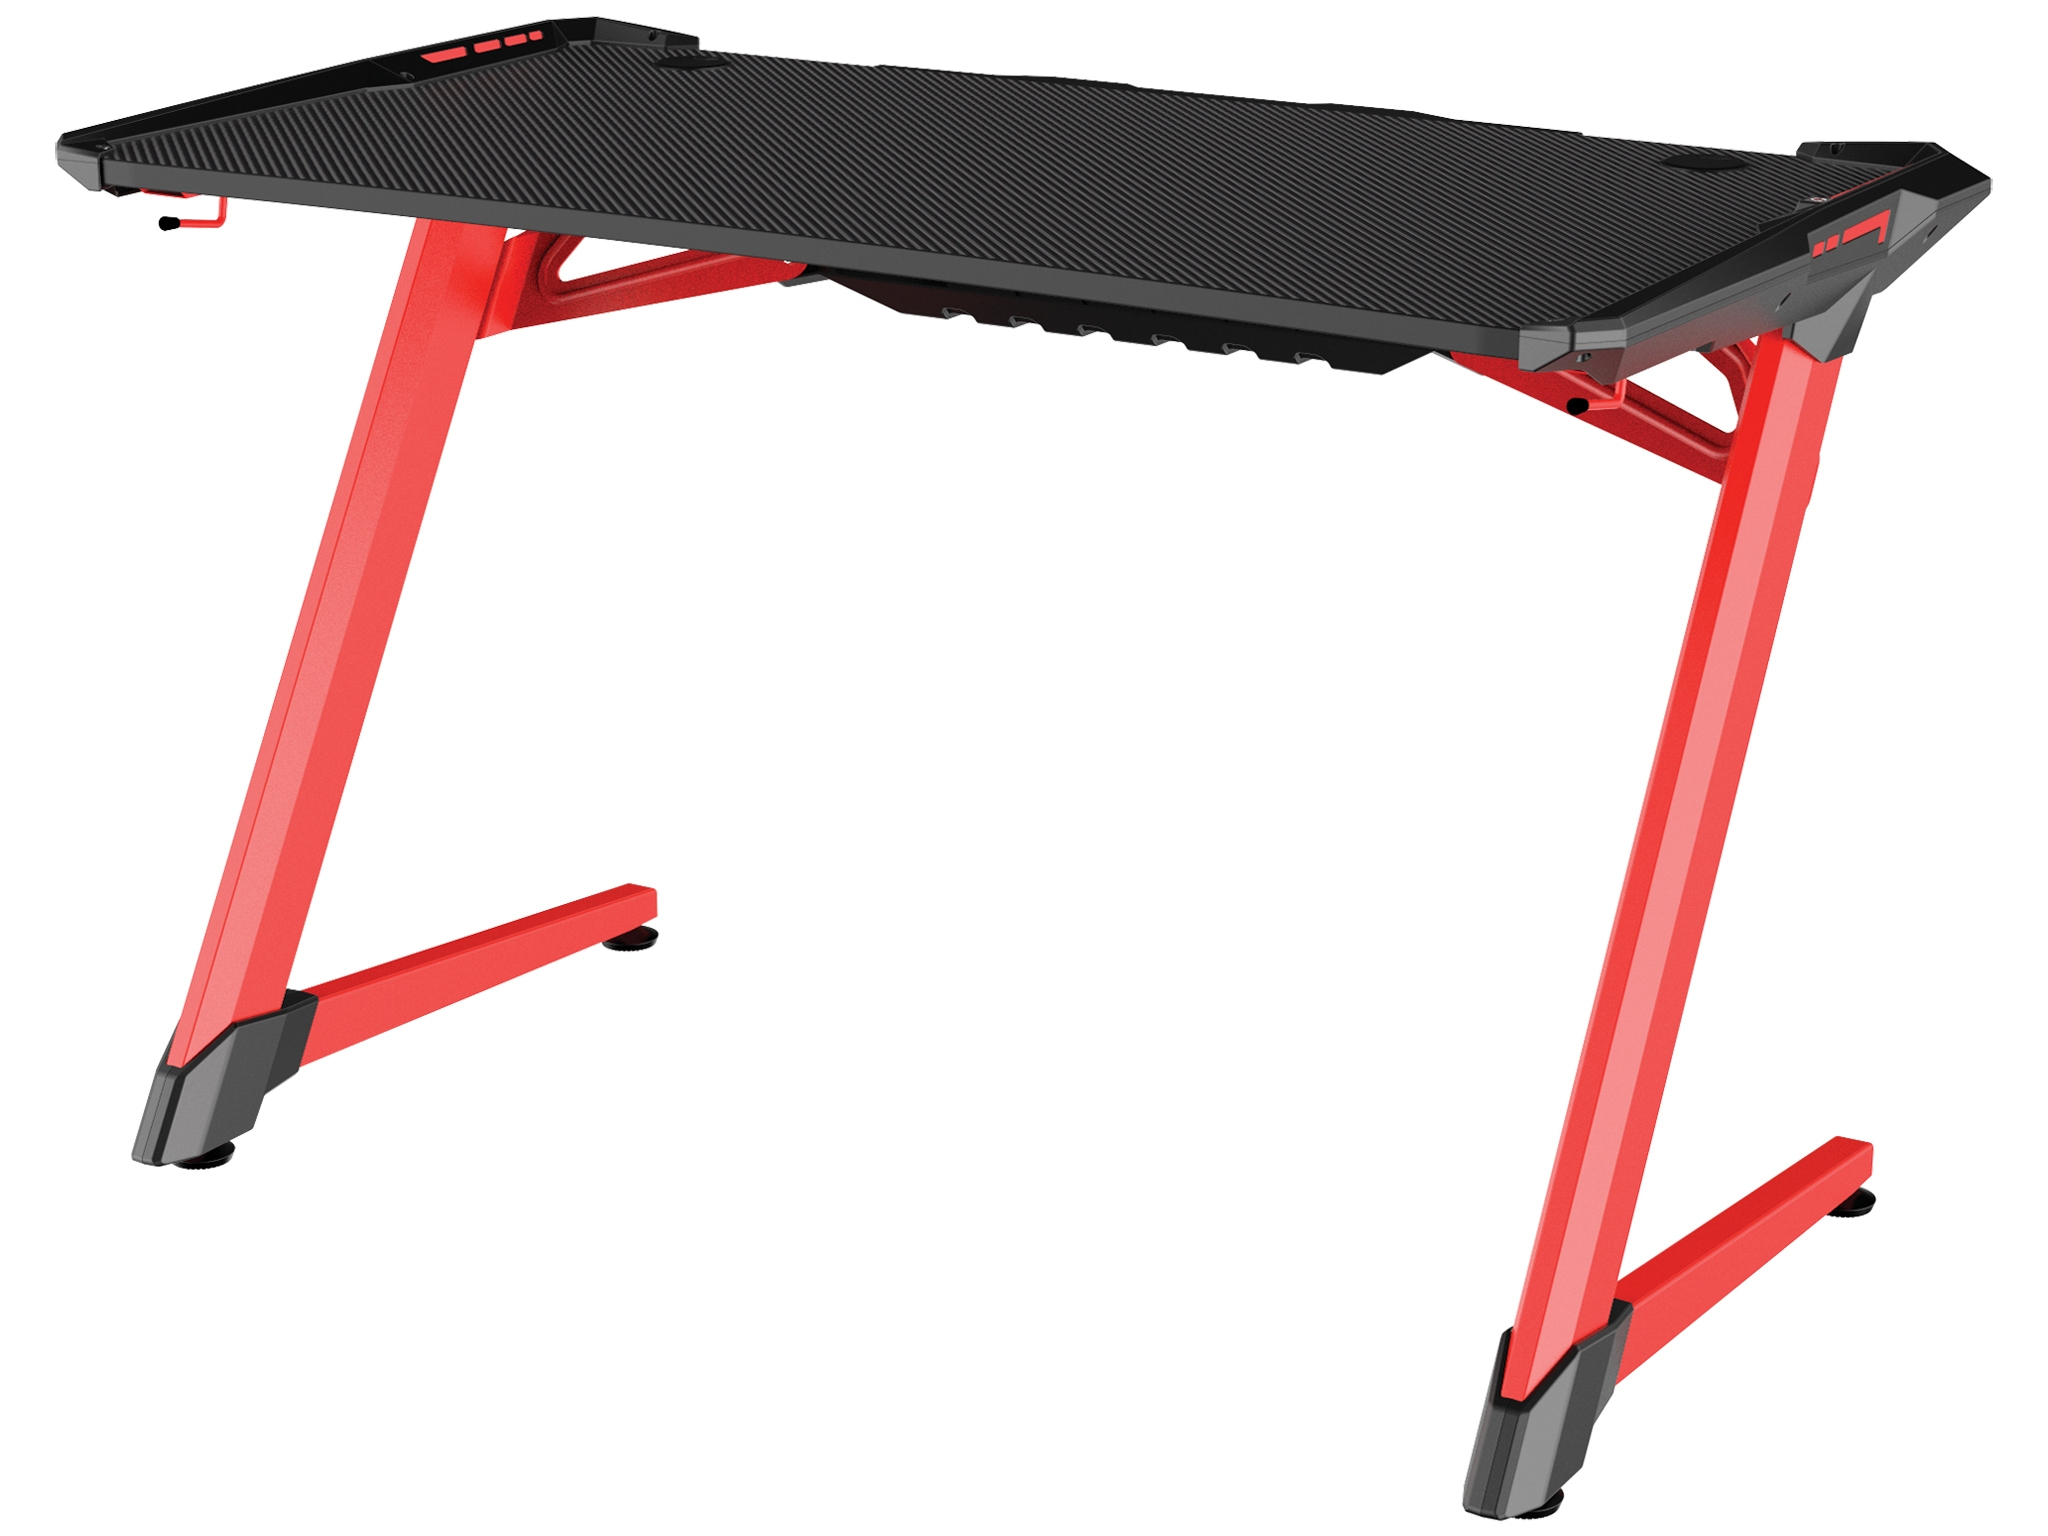 SANDBERG Fighter Gaming Desk 2 - Red - Gerade - Rechteckige Form - Holz - Schwarz - Rot - 1200 mm - 640 mm